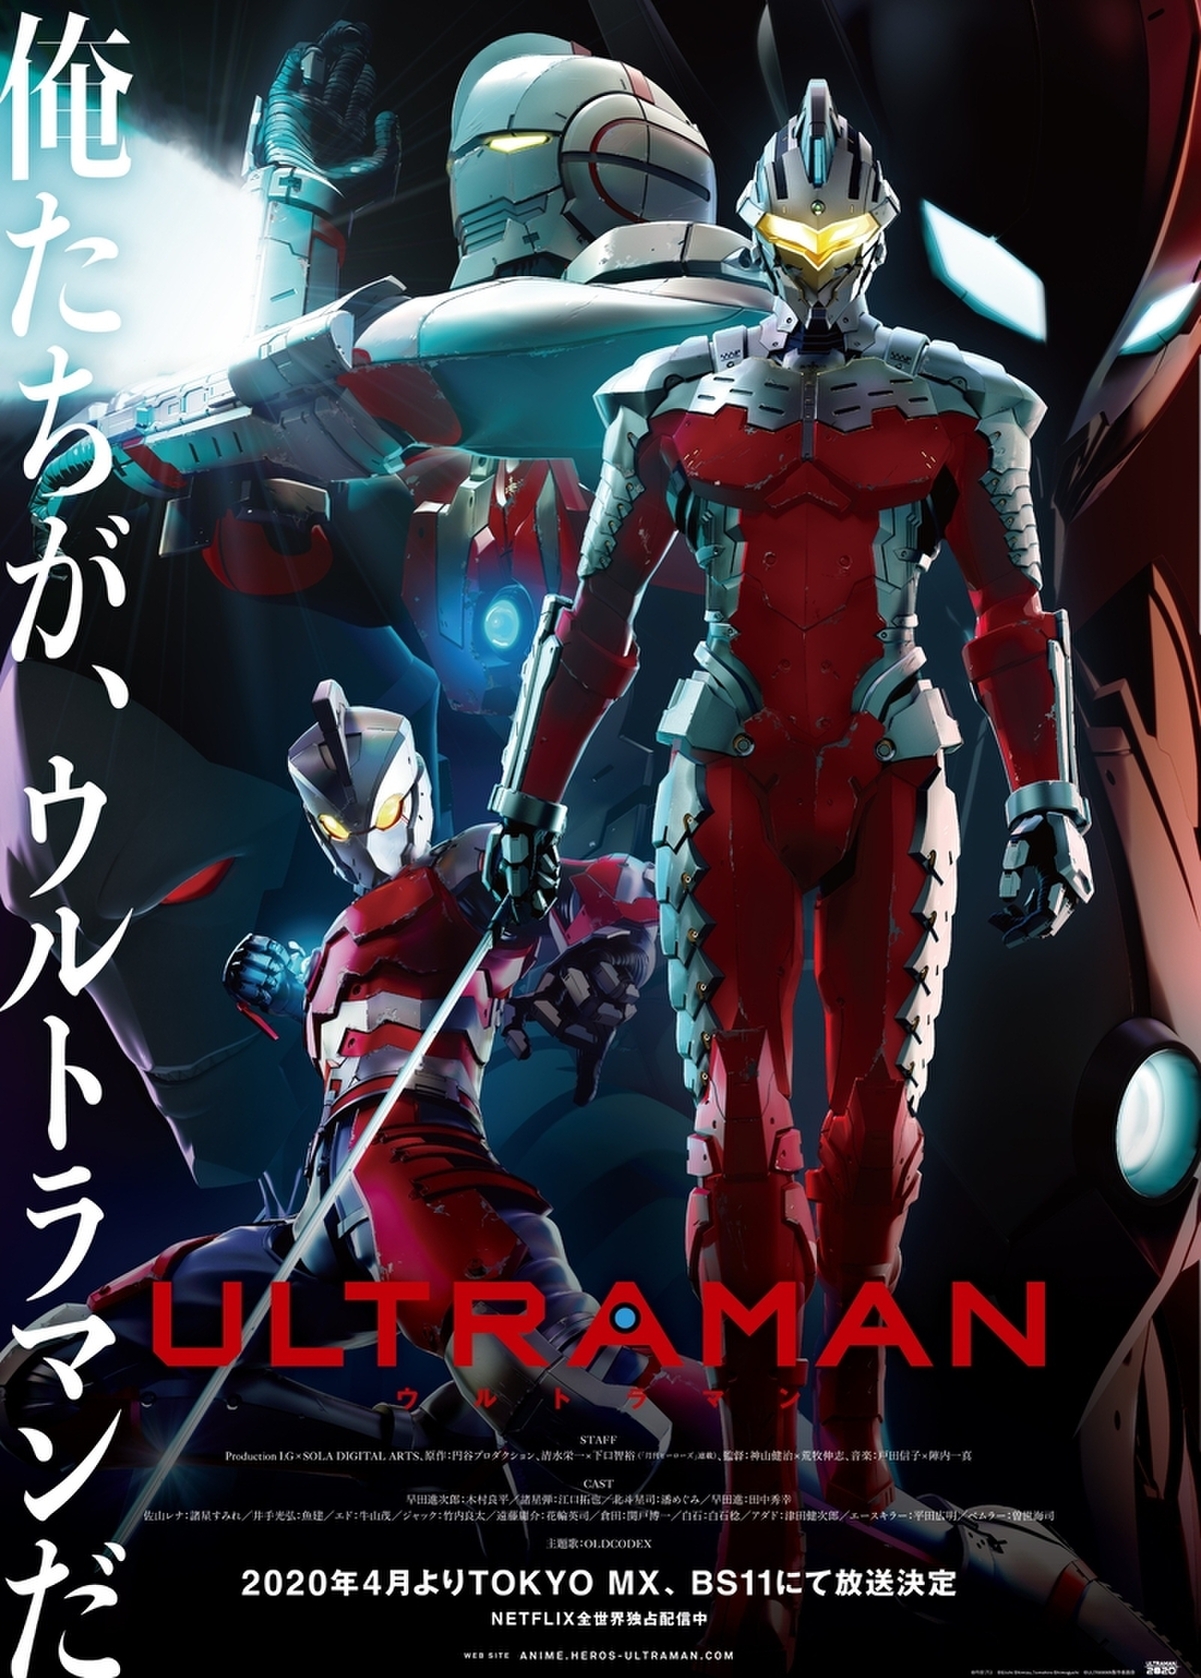 神山健治 荒牧伸志 Ultraman 地上波放送が決定 シーズン2製作も始動 映画ニュース 映画 Com